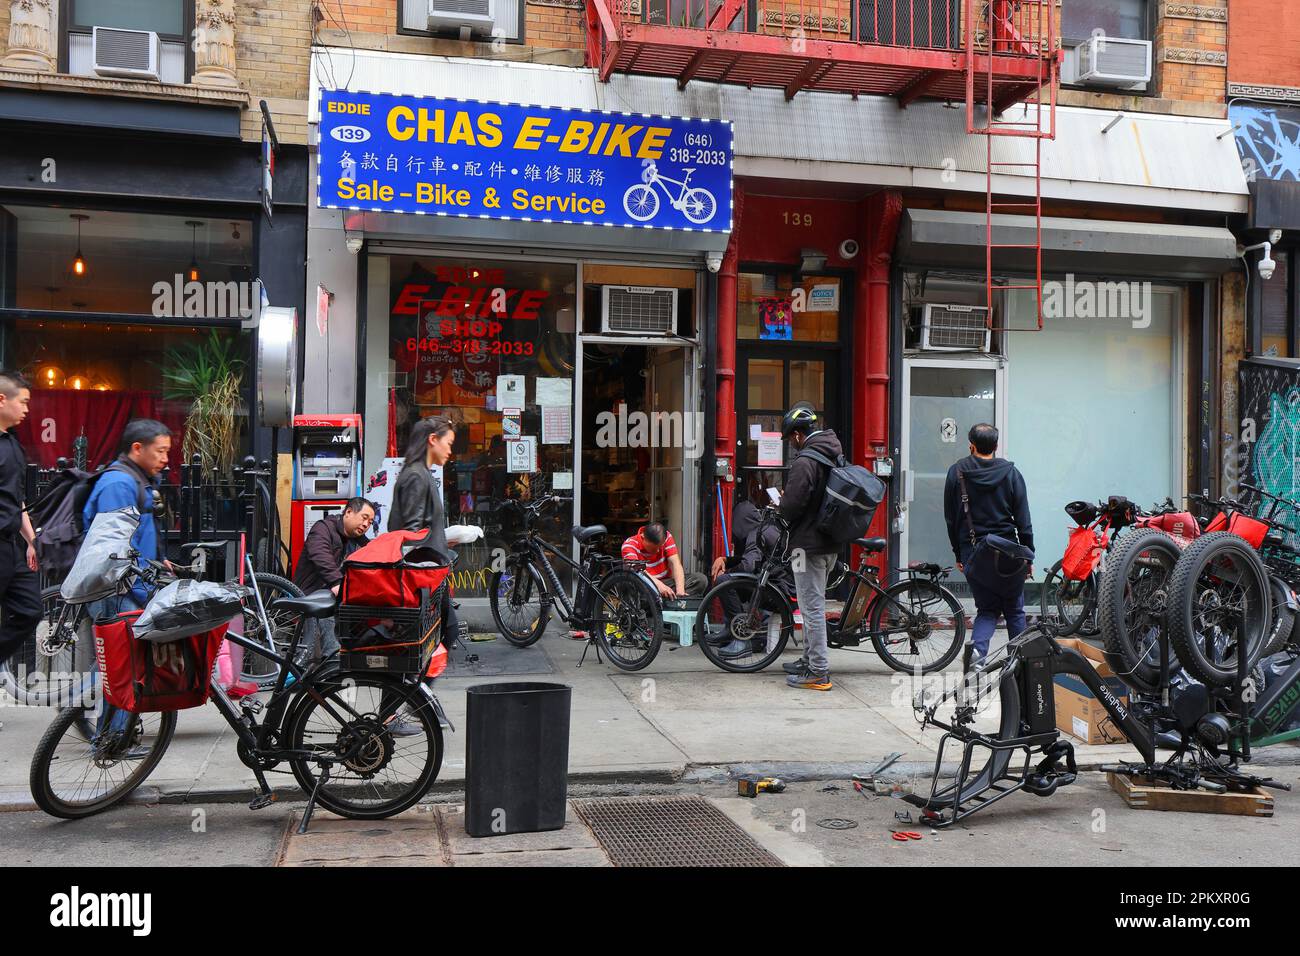 E-Bike-Verkaufs- und Reparaturwerkstatt, 139 Eldridge Street in Manhattan Chinatown, New York. Stockfoto